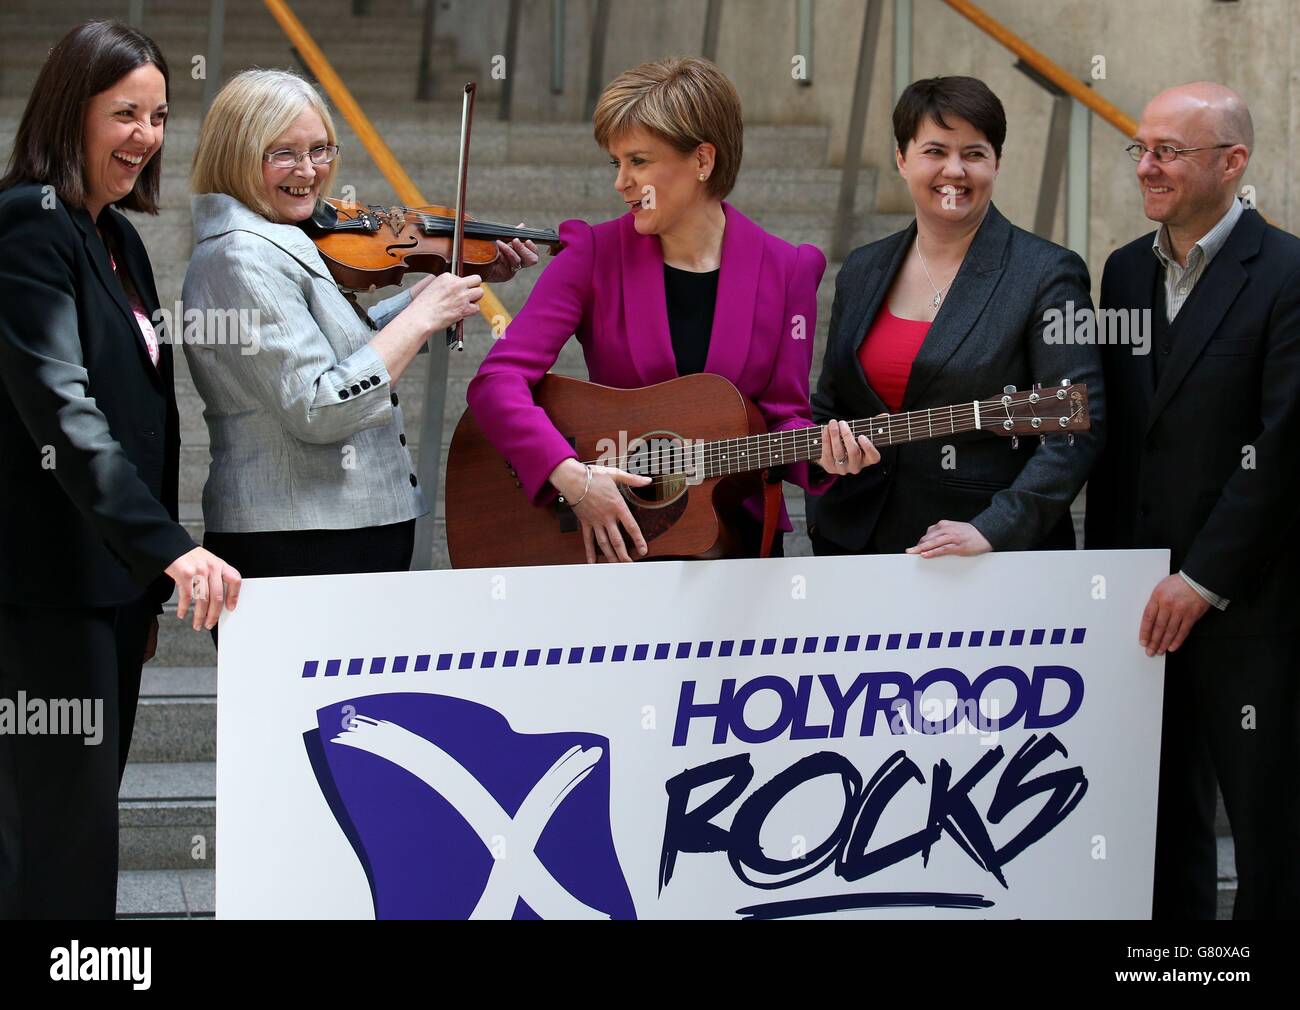 Die erste Ministerin Nicola Sturgeon (Mitte) und die Vorsitzende Tricia Marwick (zweite links) schließen sich der schottischen Labour-Führerin im schottischen Parlament Kezia Dugdale (ganz links) an, die Vorsitzende der schottischen Konservativen Ruth Davidson (dritte rechts), der Vorsitzende der schottischen Grünen, Patrick Harvie (rechts), während sie Holyrood Rocks, Ein landesweiter Musikwettbewerb, der darauf abzielt, das beste neue musikalische Talent in Schottland zu finden und gleichzeitig junge Menschen dazu ermutigt, ihre Stimme bei den Holyrood-Wahlen 2016 zu nutzen. Stockfoto